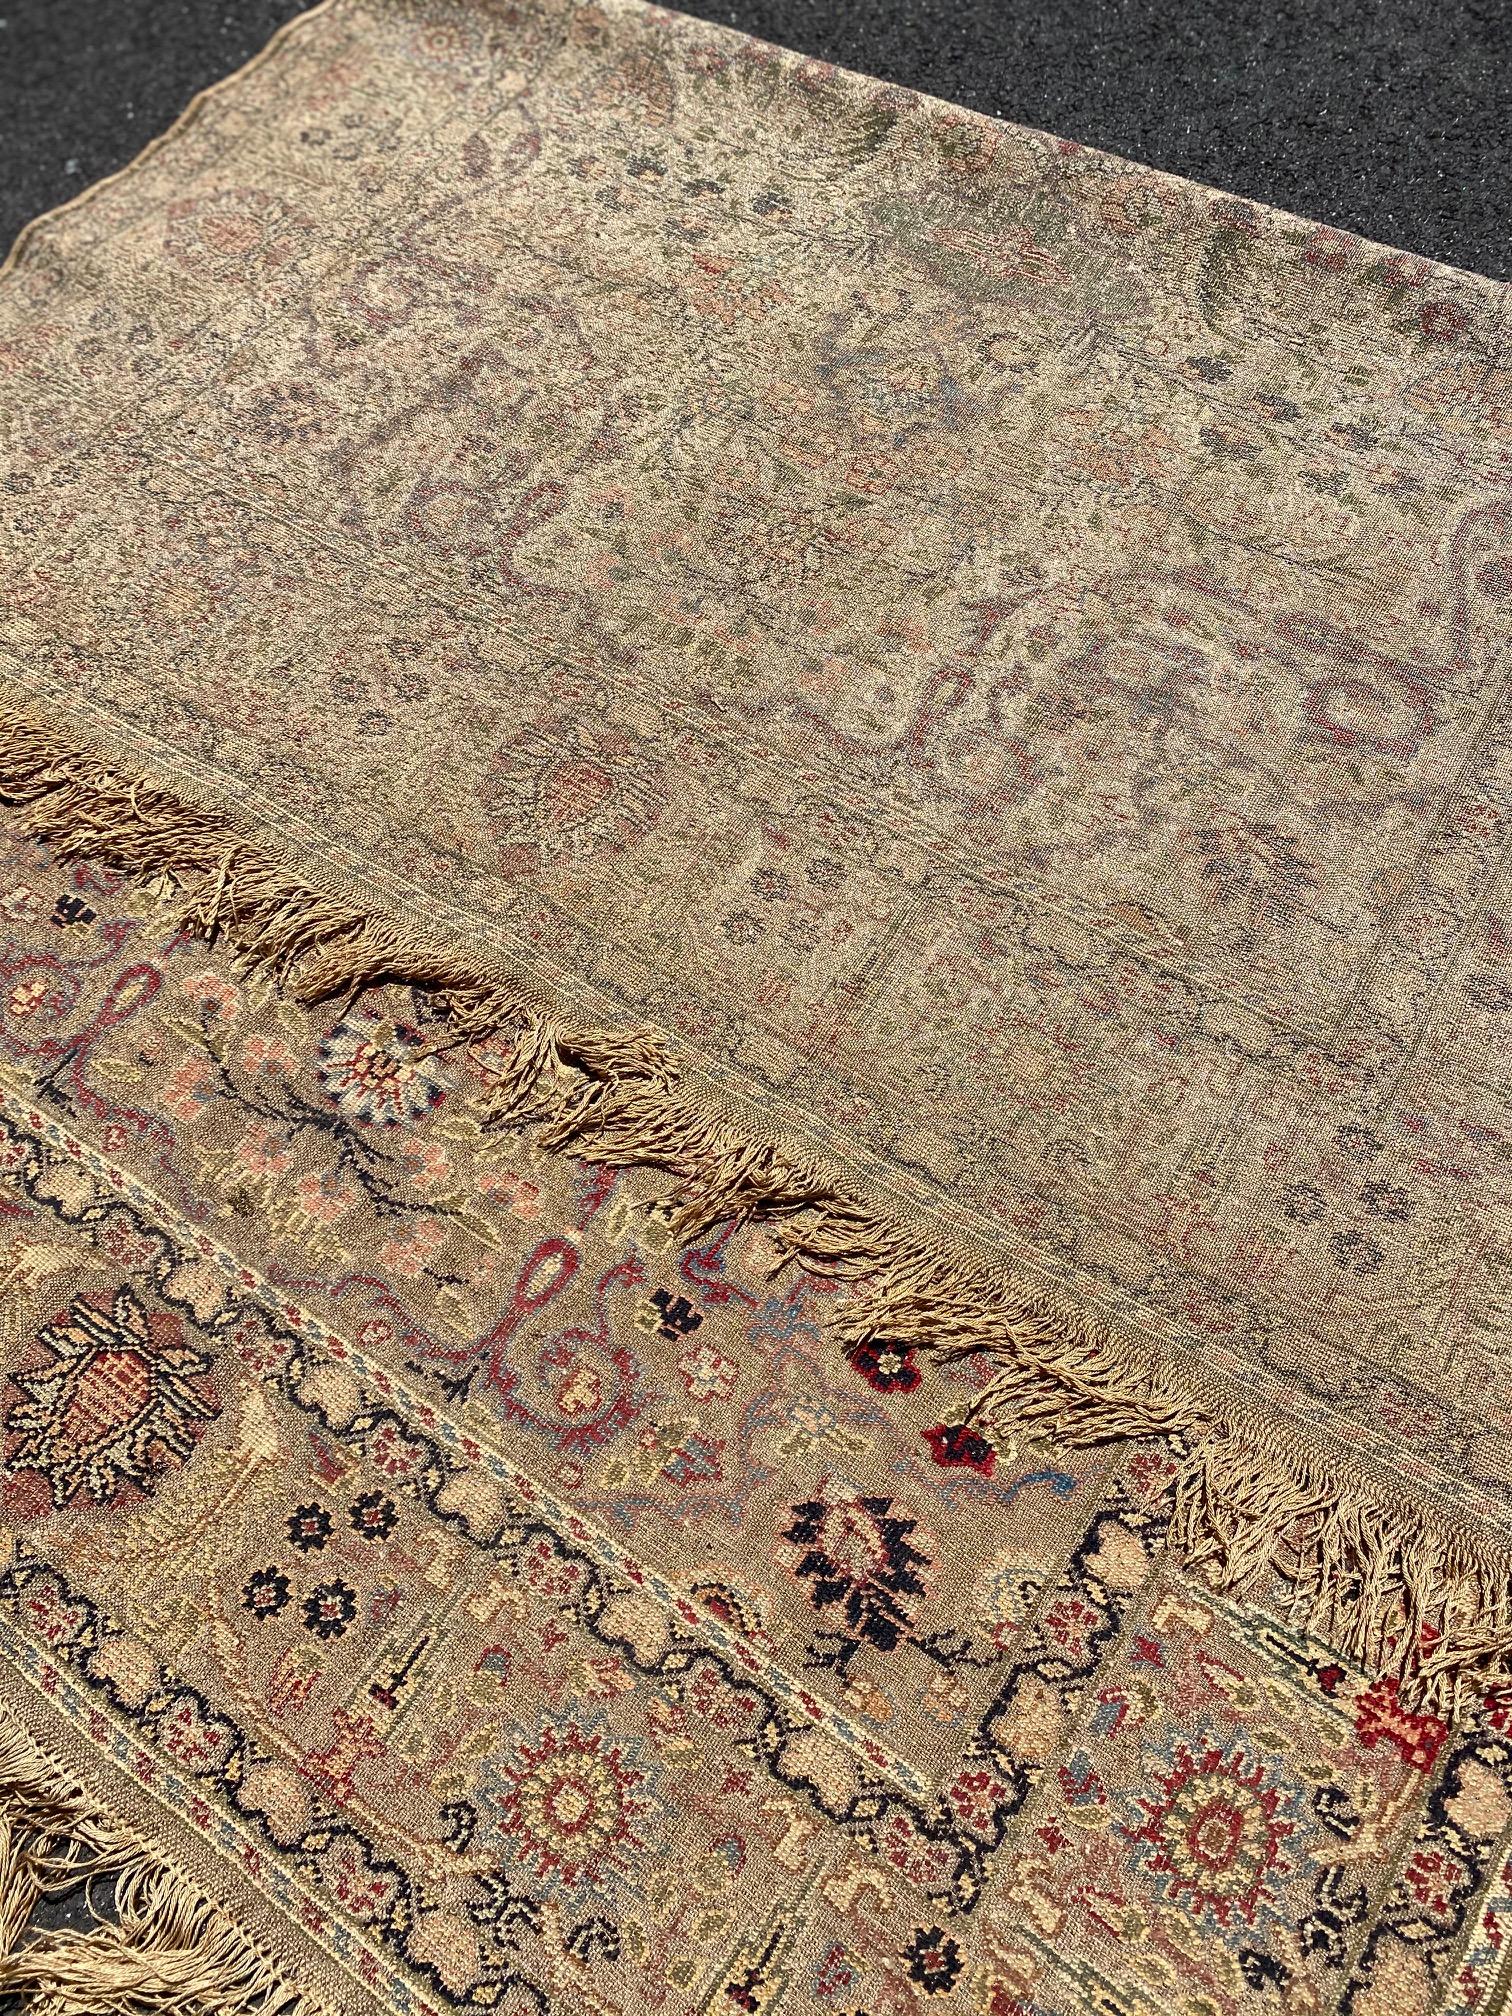 Dies ist eine unberührte und fein gewebt atemberaubende antike Floral türkischen Kaysari Seide & Metallfaden Wandteppich c. 1880-1900, handgewebt in der Türkei Messung 4,3 x 6,1 ft. Dies ist ein Wandbehang und ein echtes